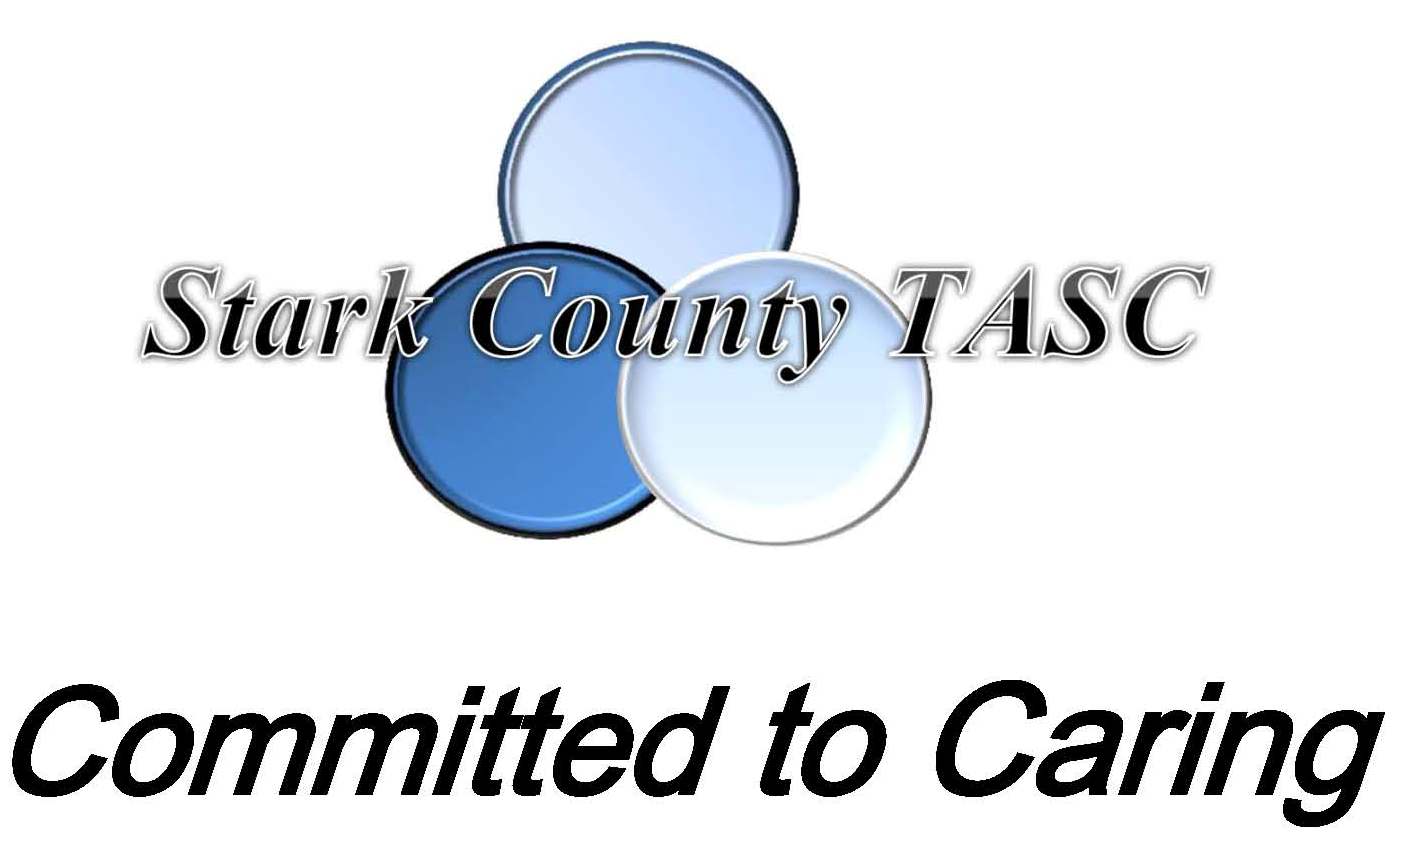 Stark County TASC